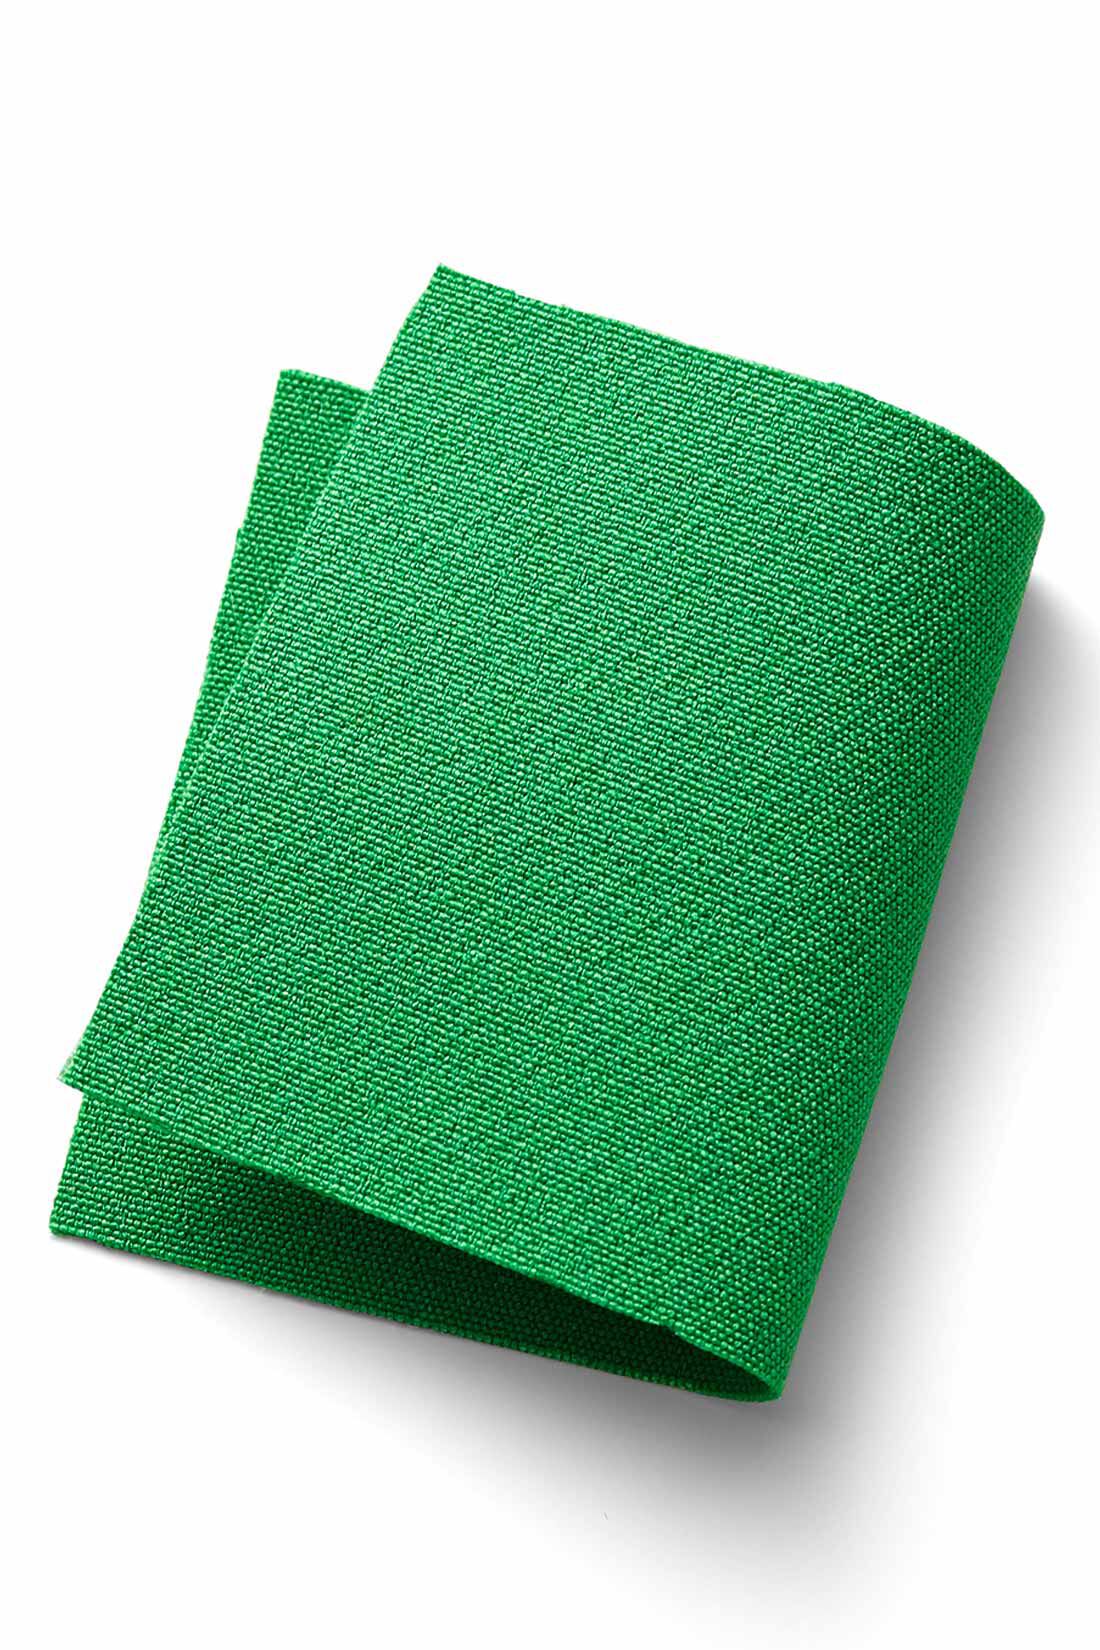 MEDE19F|MEDE19F　カラーフレアーパンツ〈グリーン〉|張りと落ち感のある、さらりとした素材。美しい発色とイージーケア性もポイント。